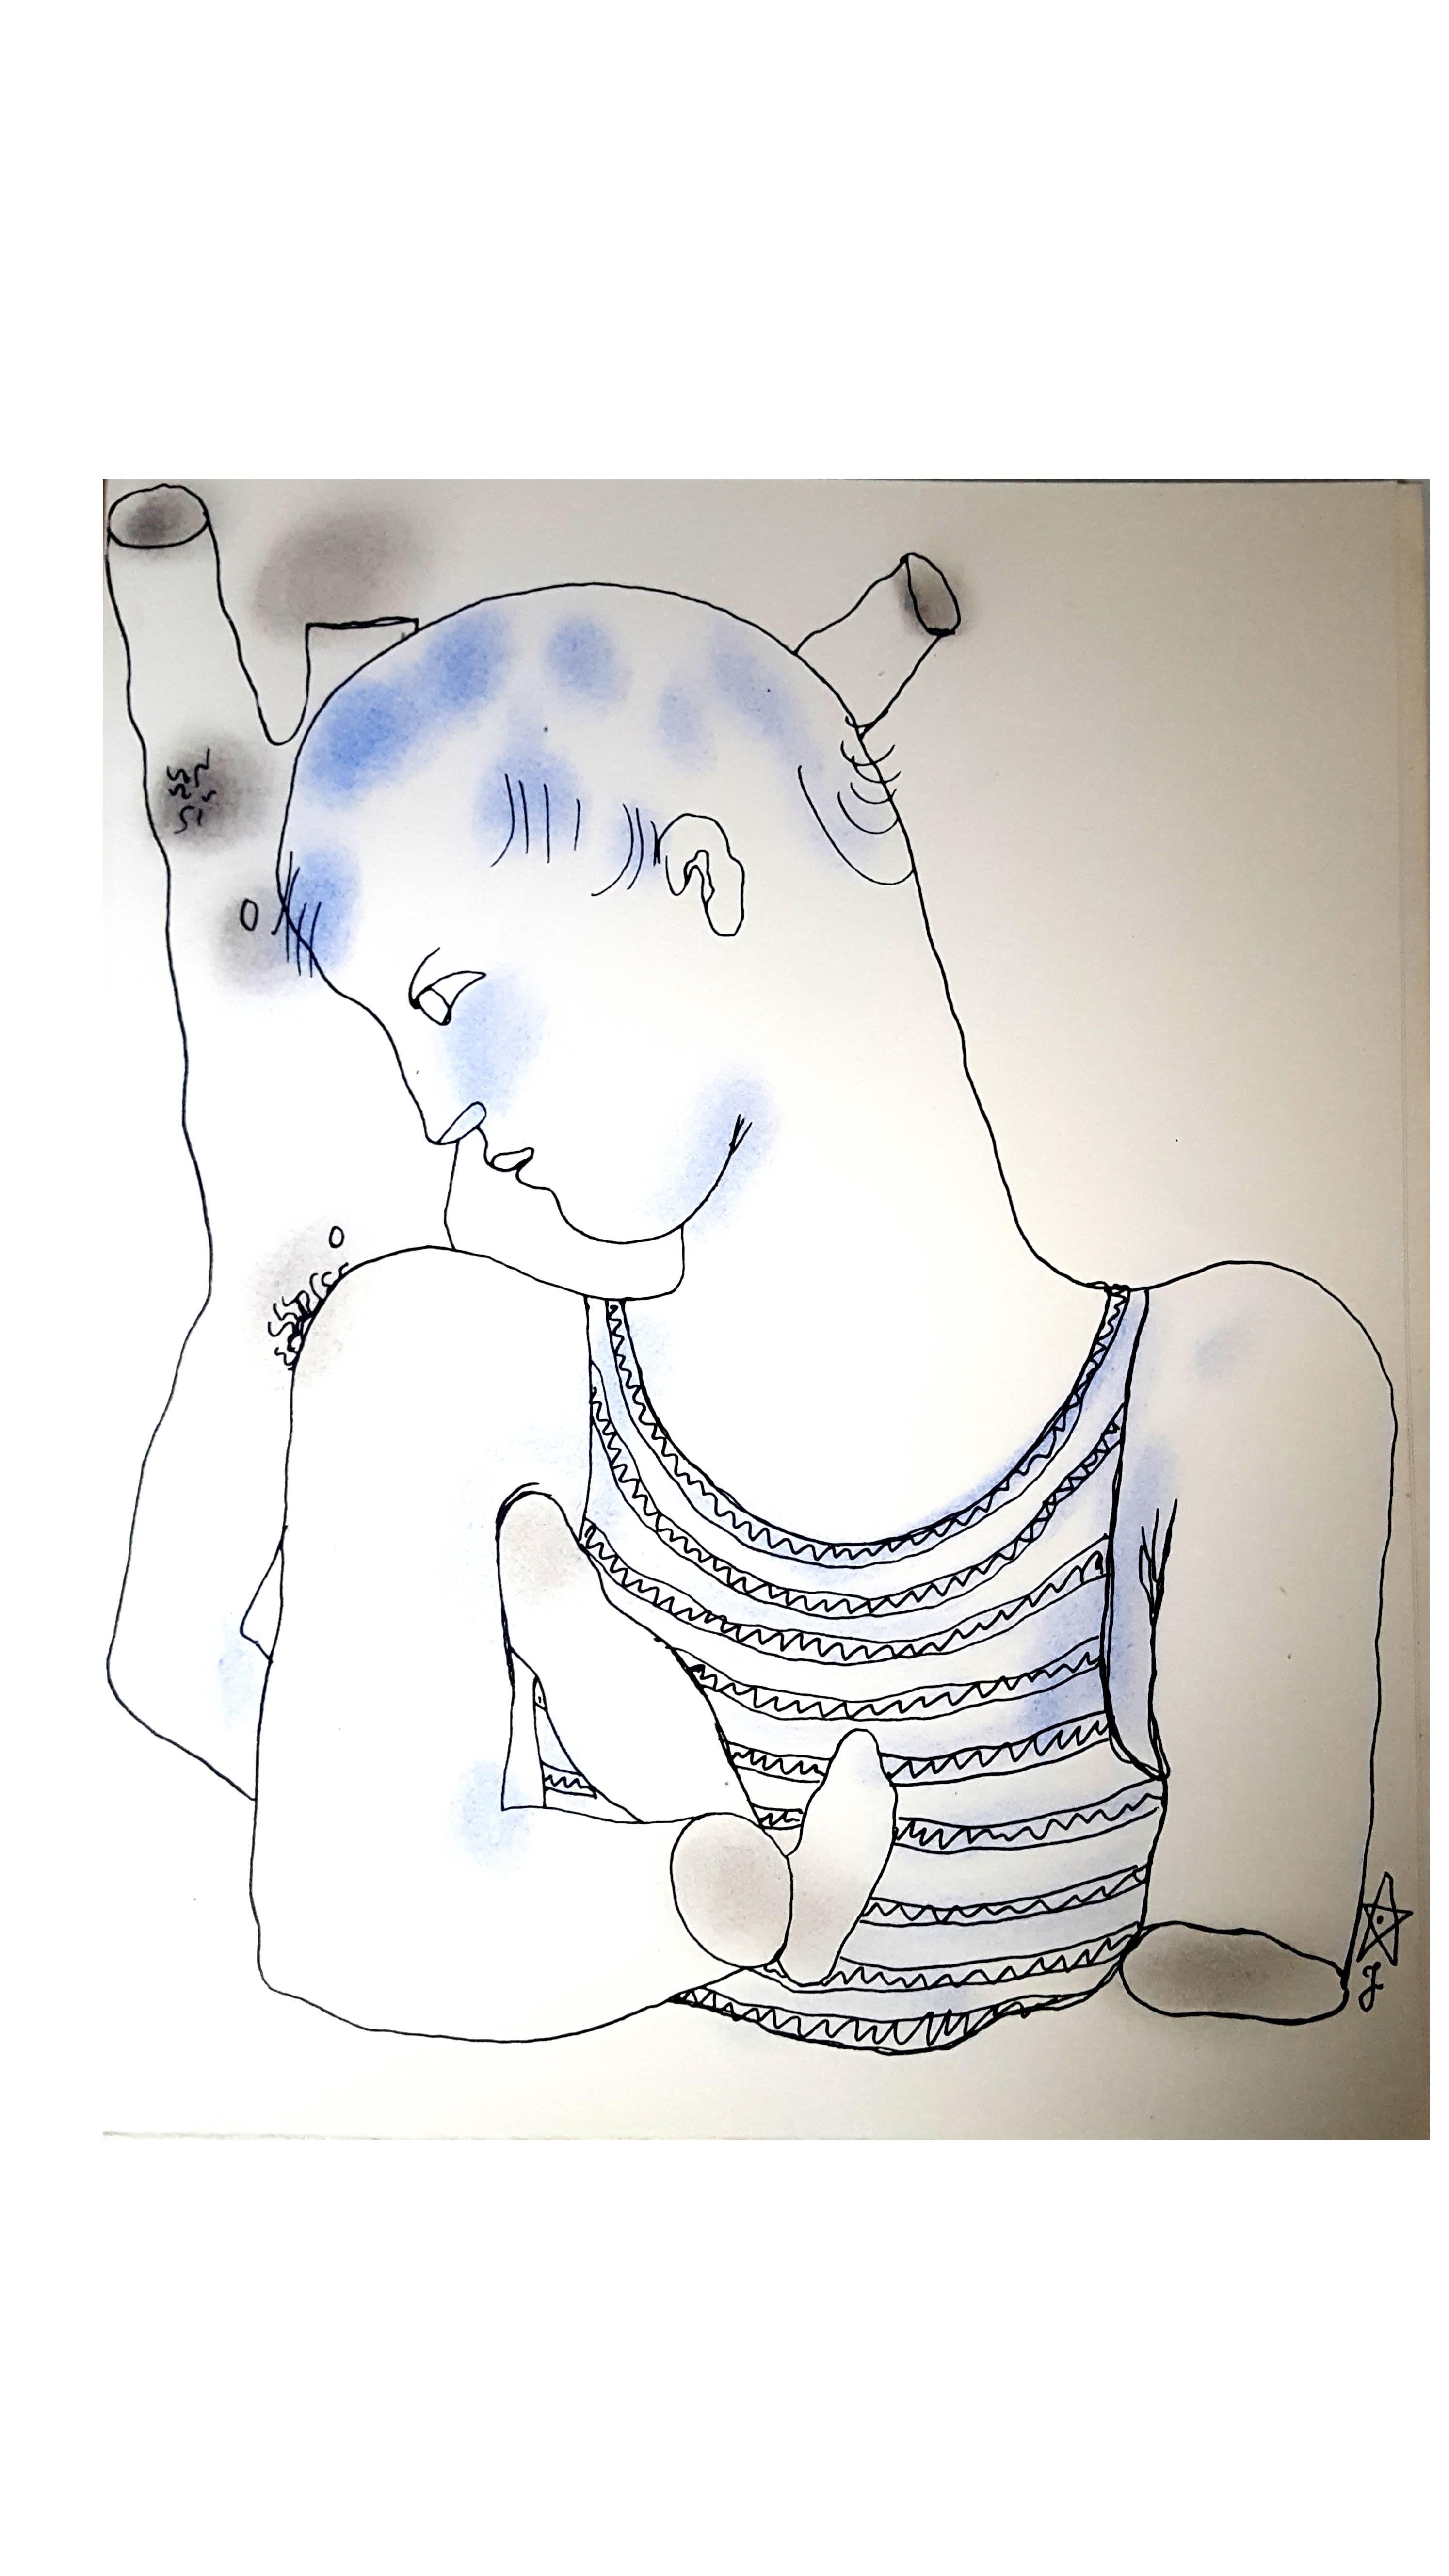 Jean Cocteau
White Book - Autobiografie über Cocteaus Entdeckung seiner Homosexualität. Das Buch wurde zunächst anonym veröffentlicht und löste einen Skandal aus.
Original handkolorierte Lithographie
Abmessungen: 28.4 x 22,8 cm
Auflage von 380 Stück